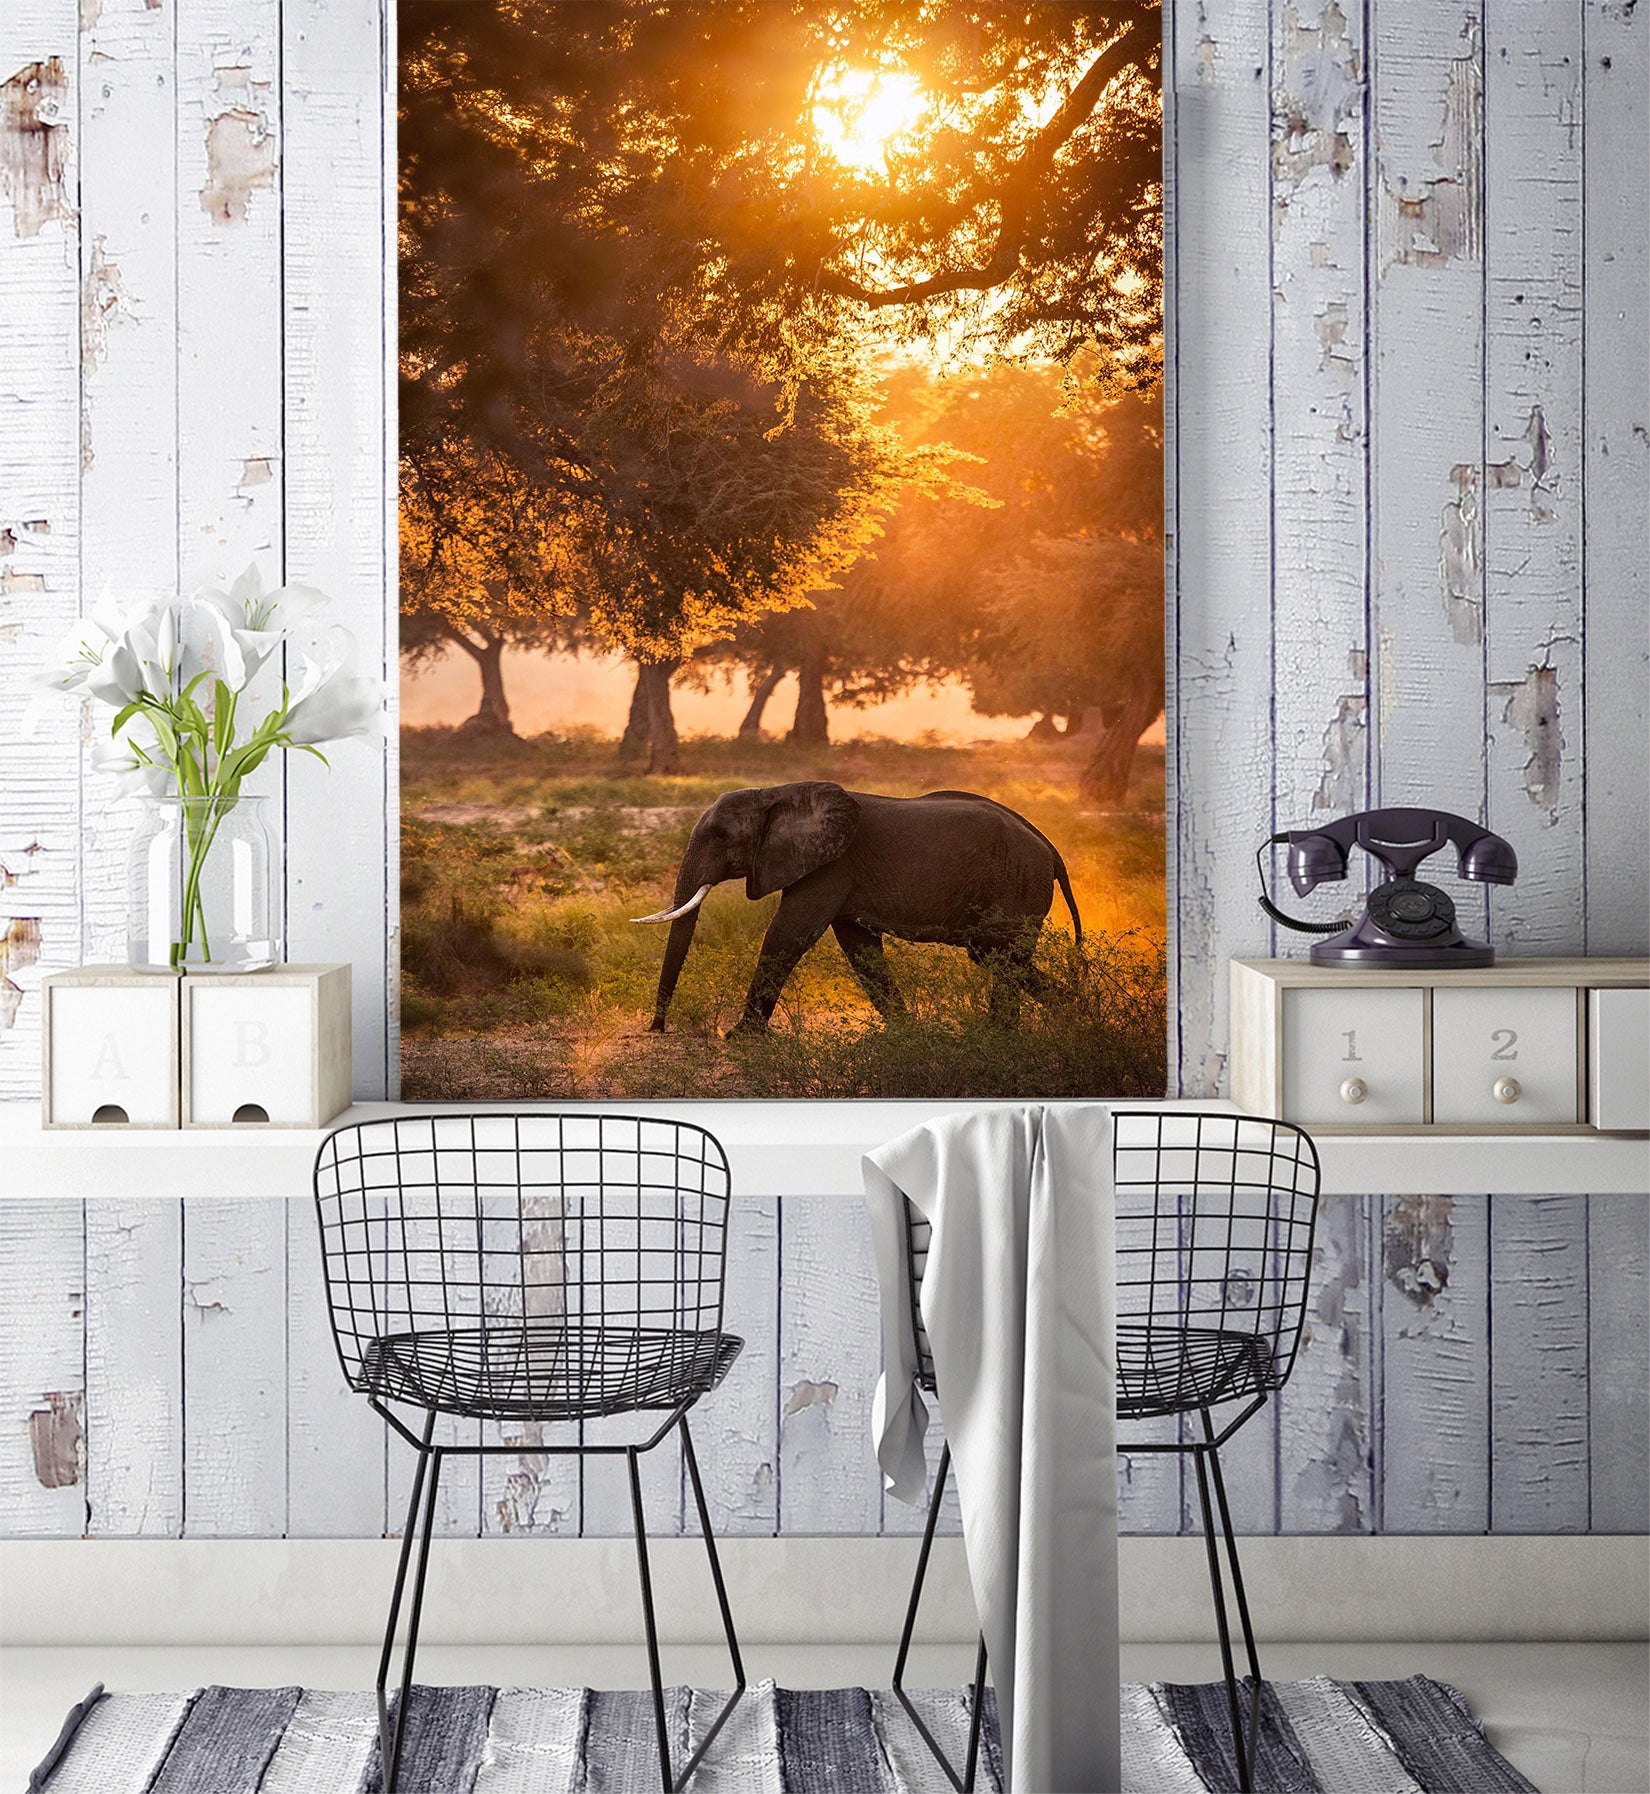 3D Sunset Eelephant 132 Wall Murals